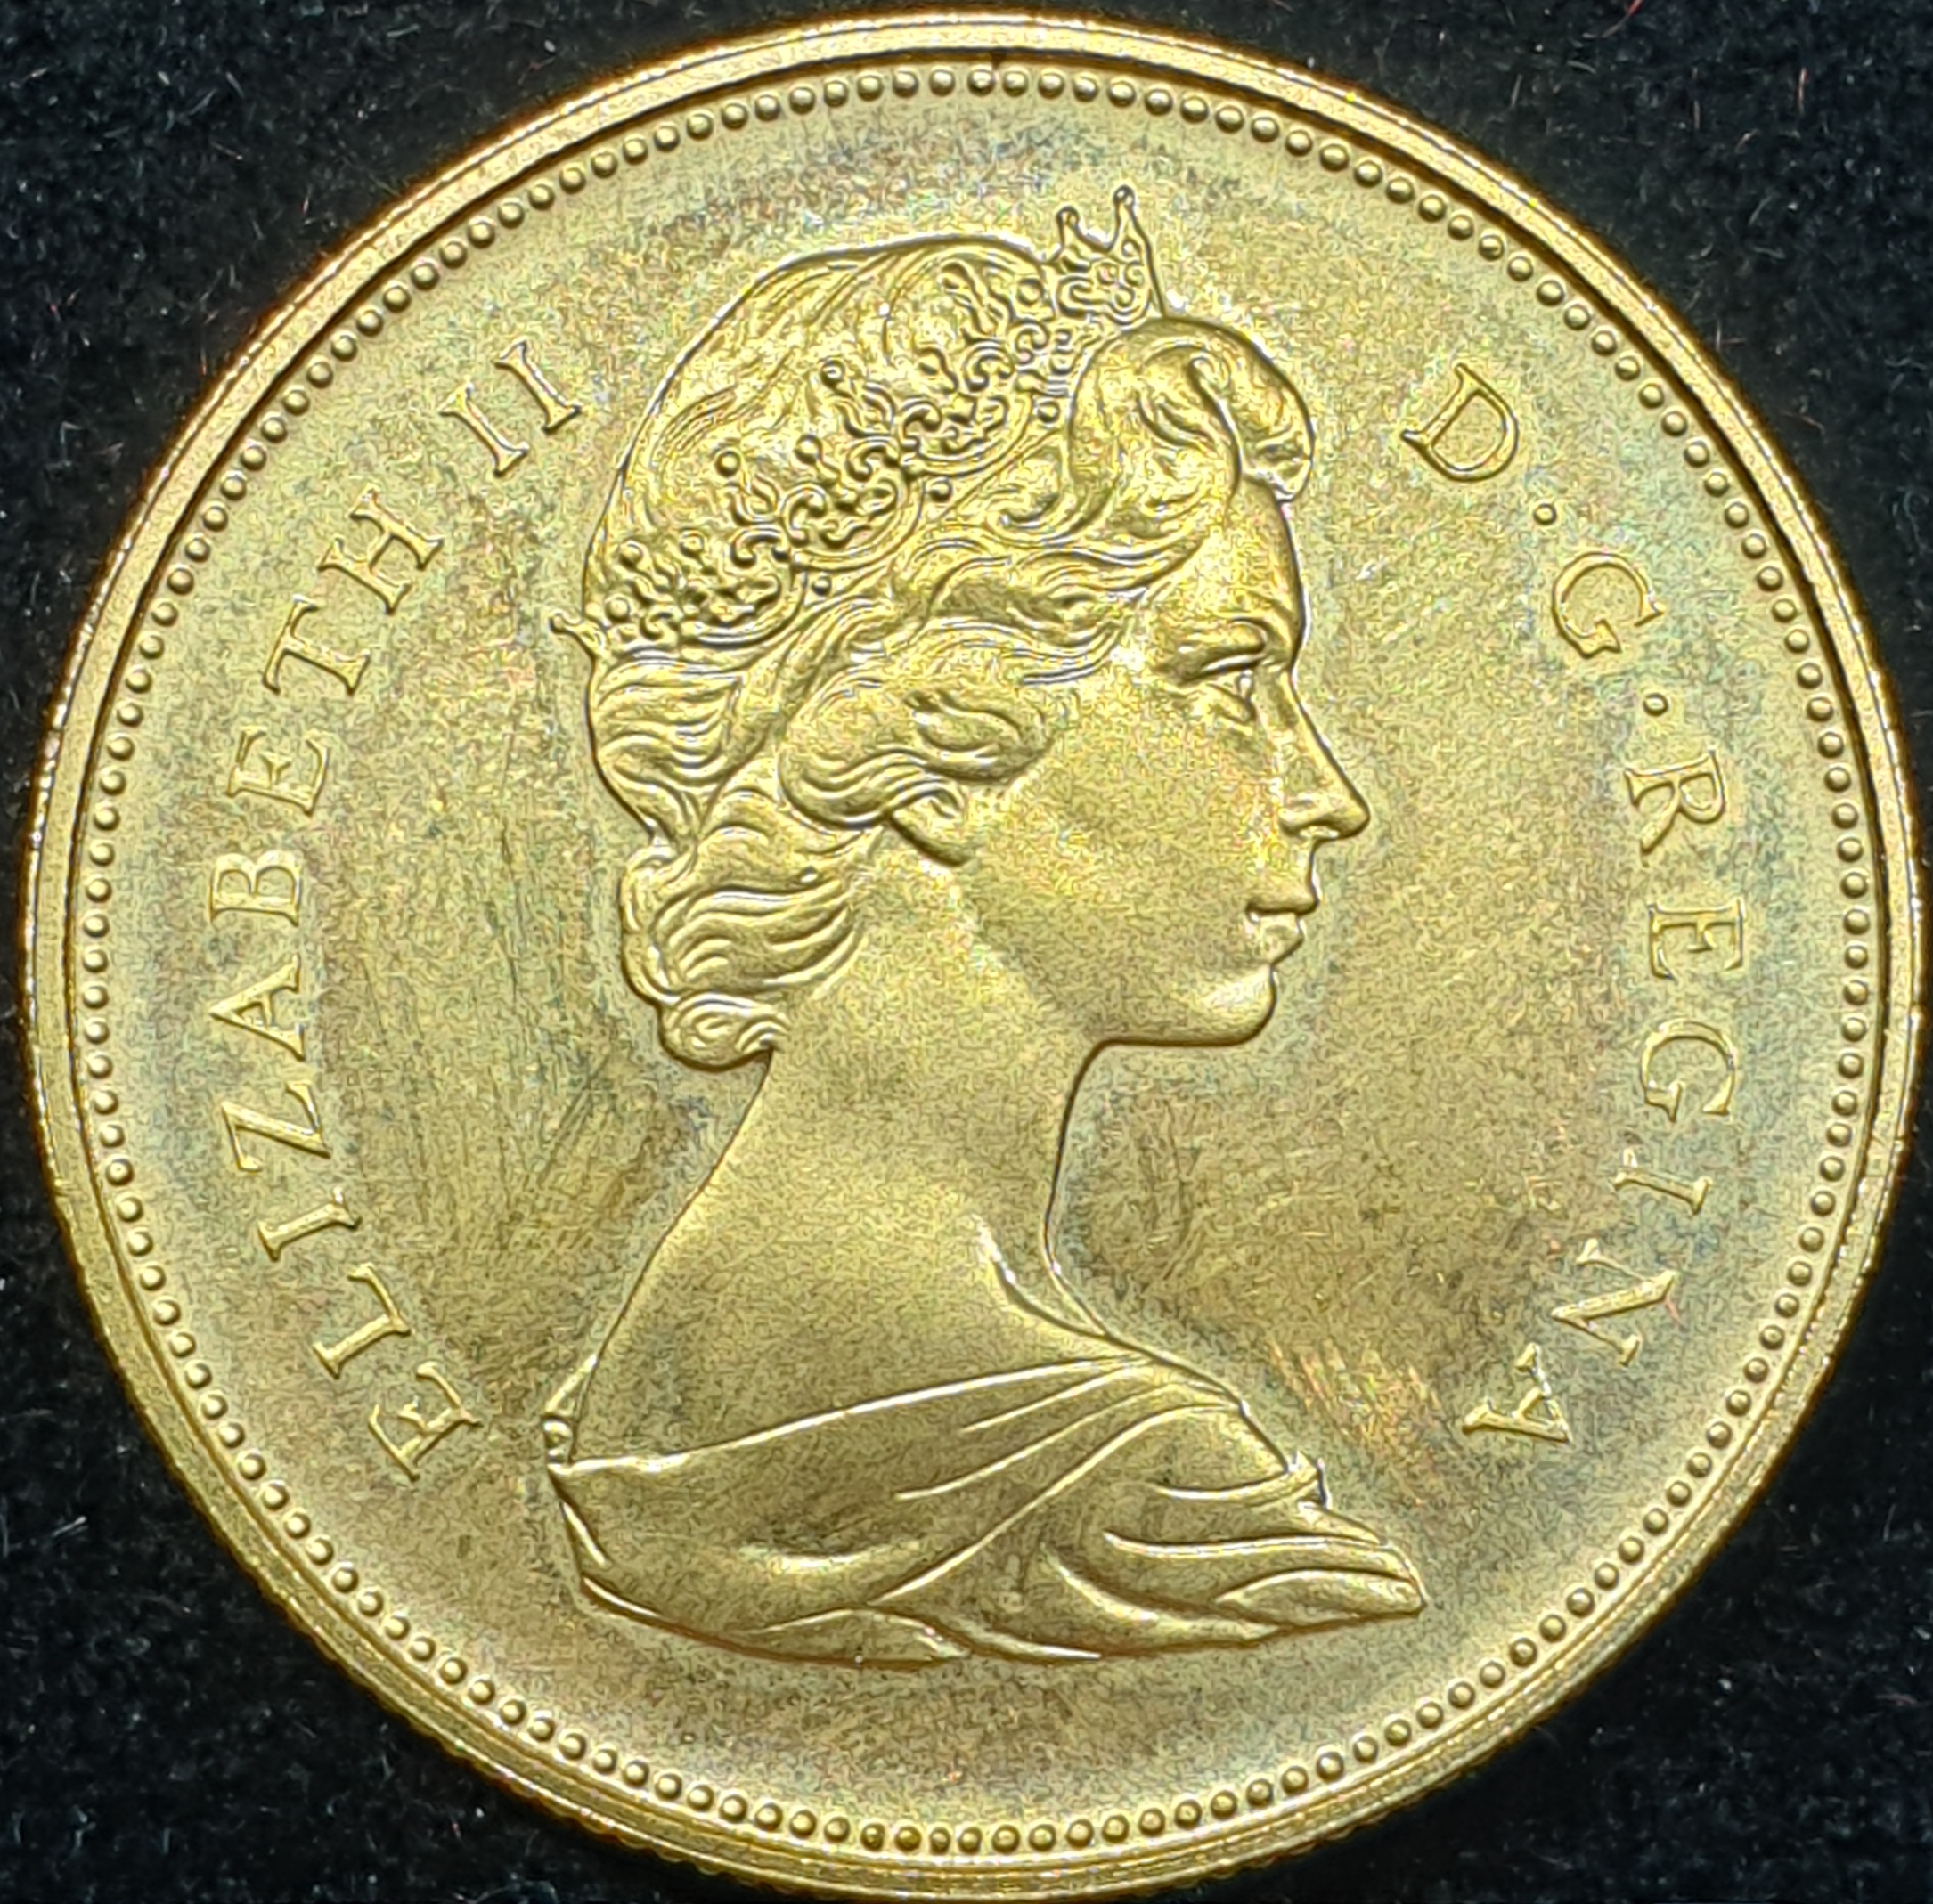 Canada - 20 dollar - 1967 - Elizabeth II - Confederation